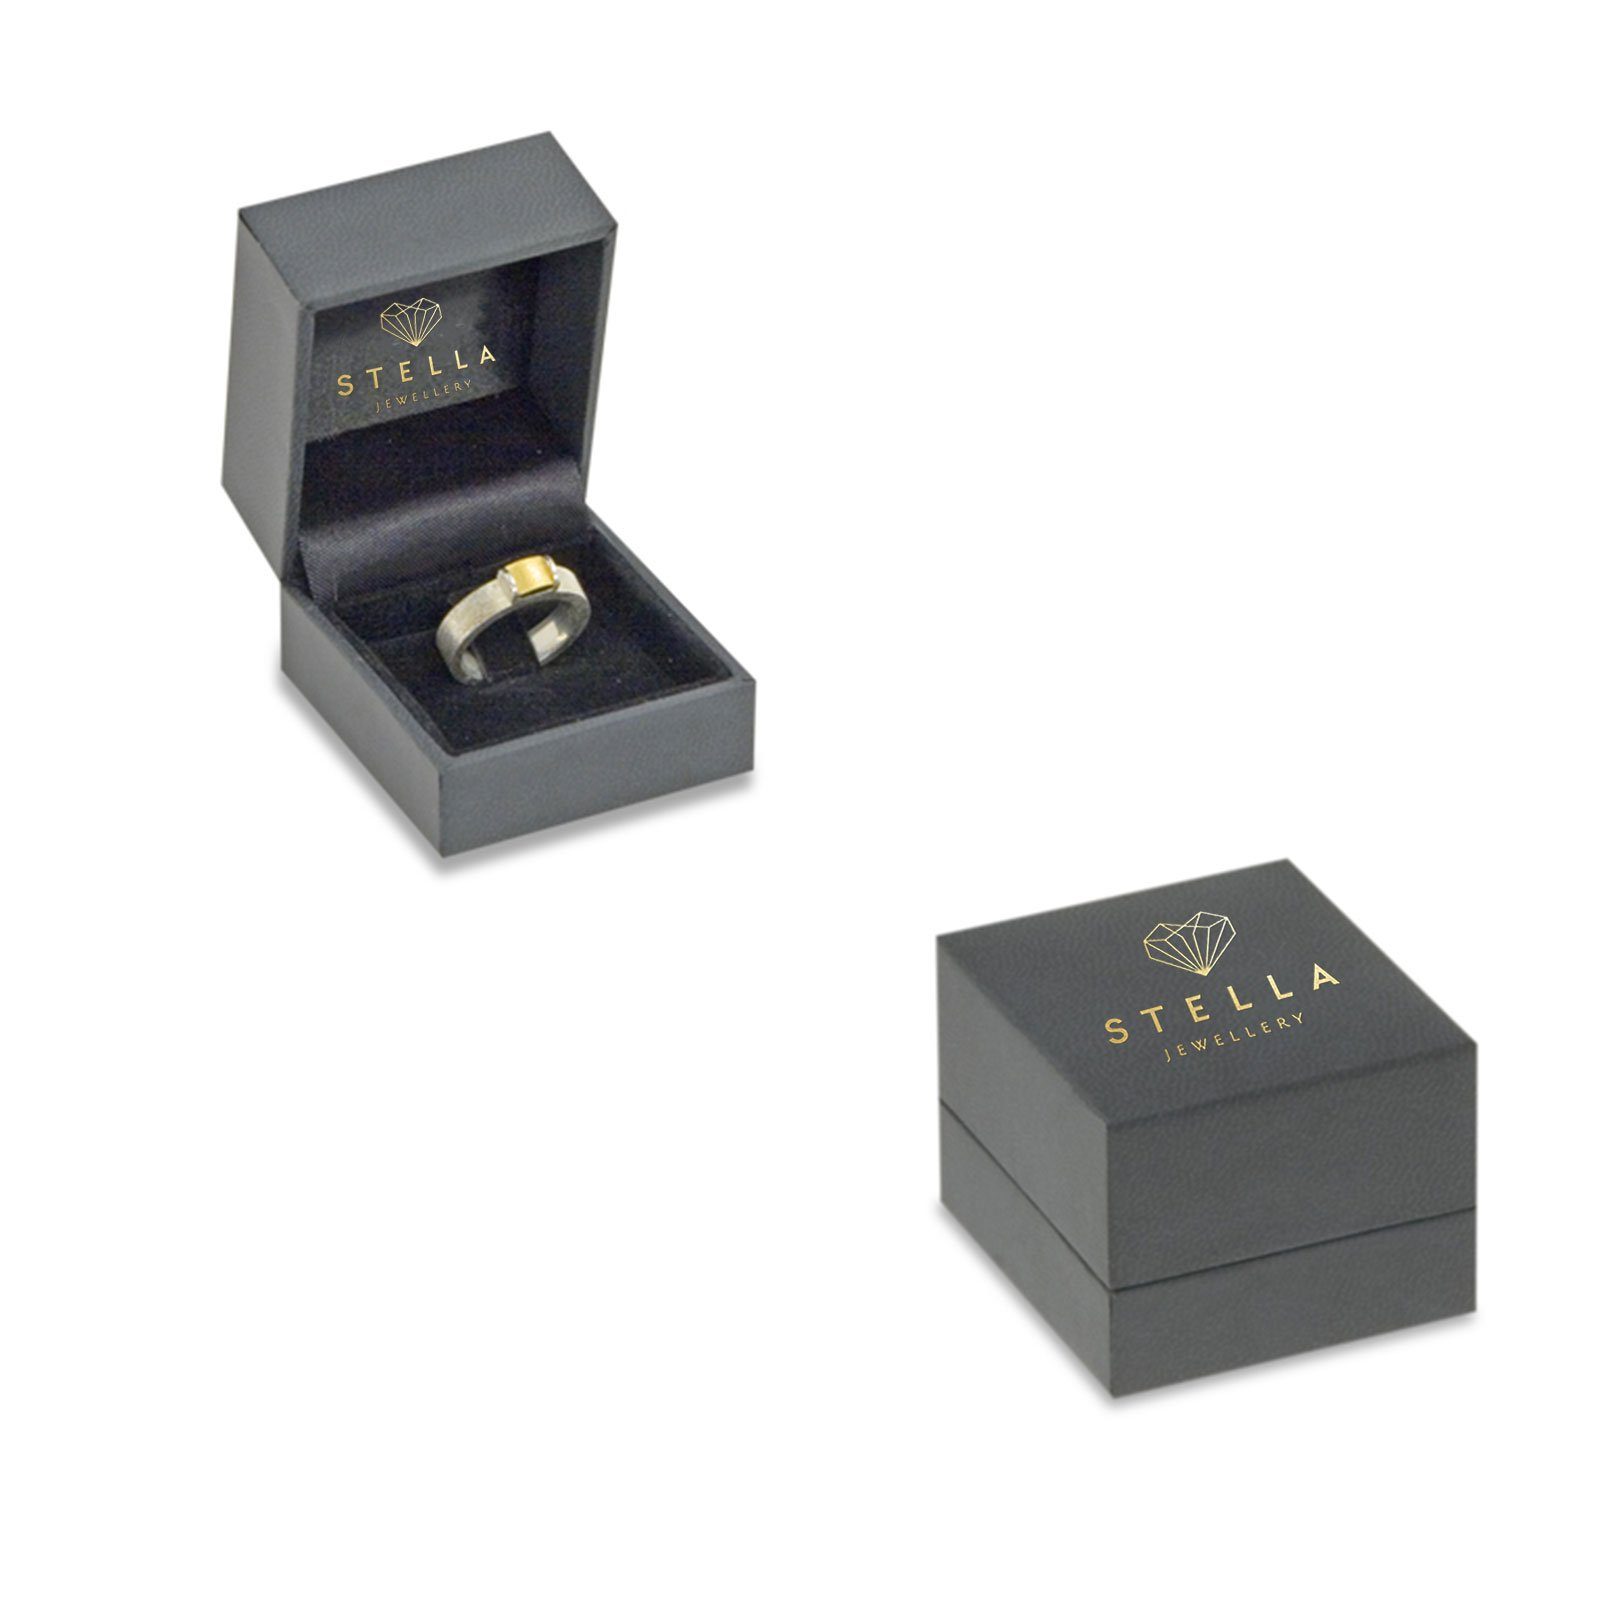 Damen Schmuck Stella-Jewellery Memoirering 585er Gelbgold Ring 5 Diamanten ca. 0,10 ct,Gr. 54 (Memoryring), Goldschmuck für Dame